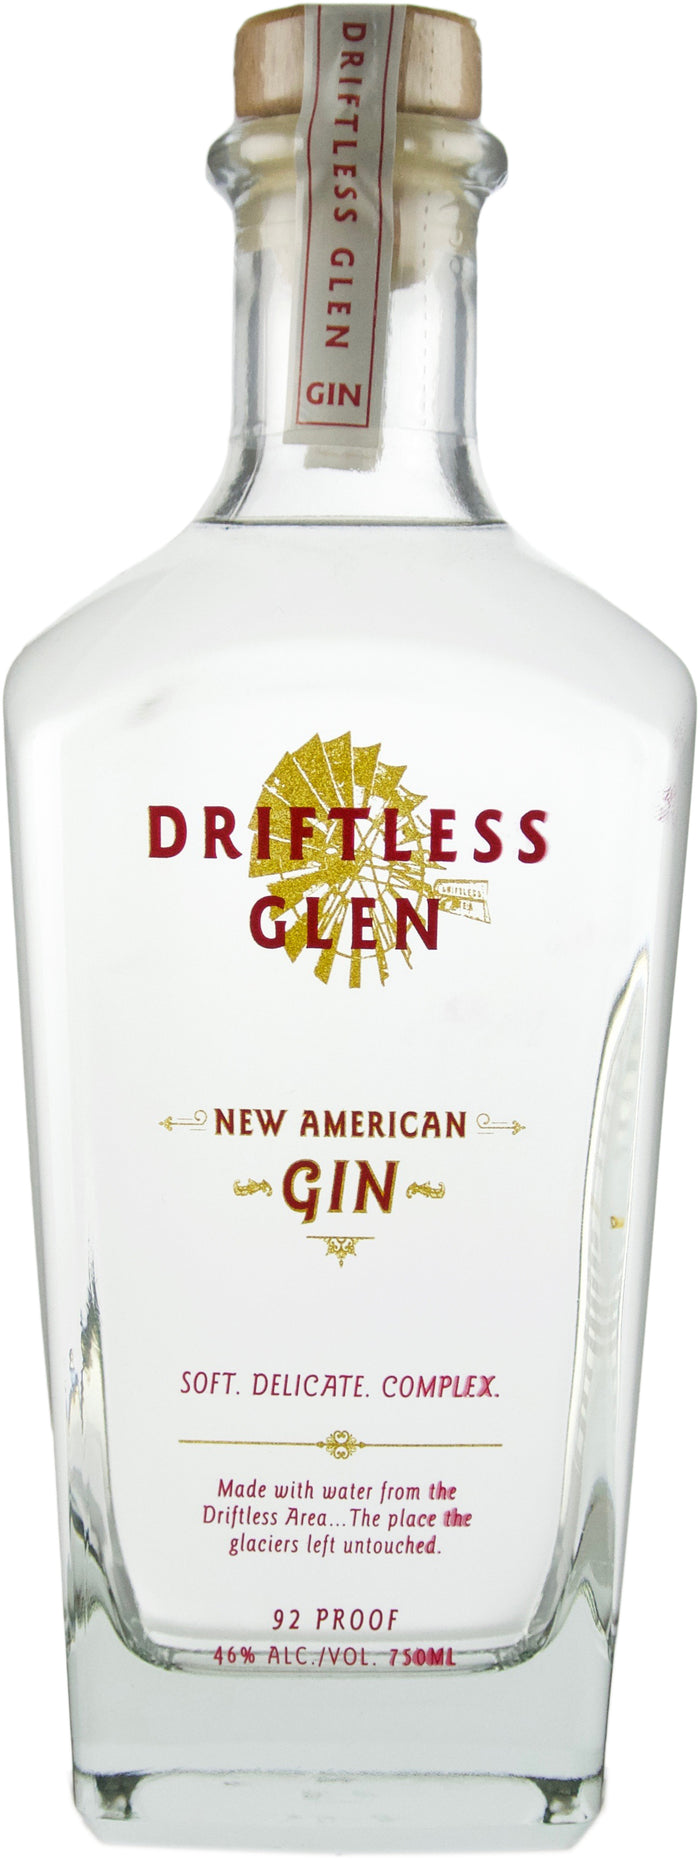 Driftless Glen Distillery New American Gin